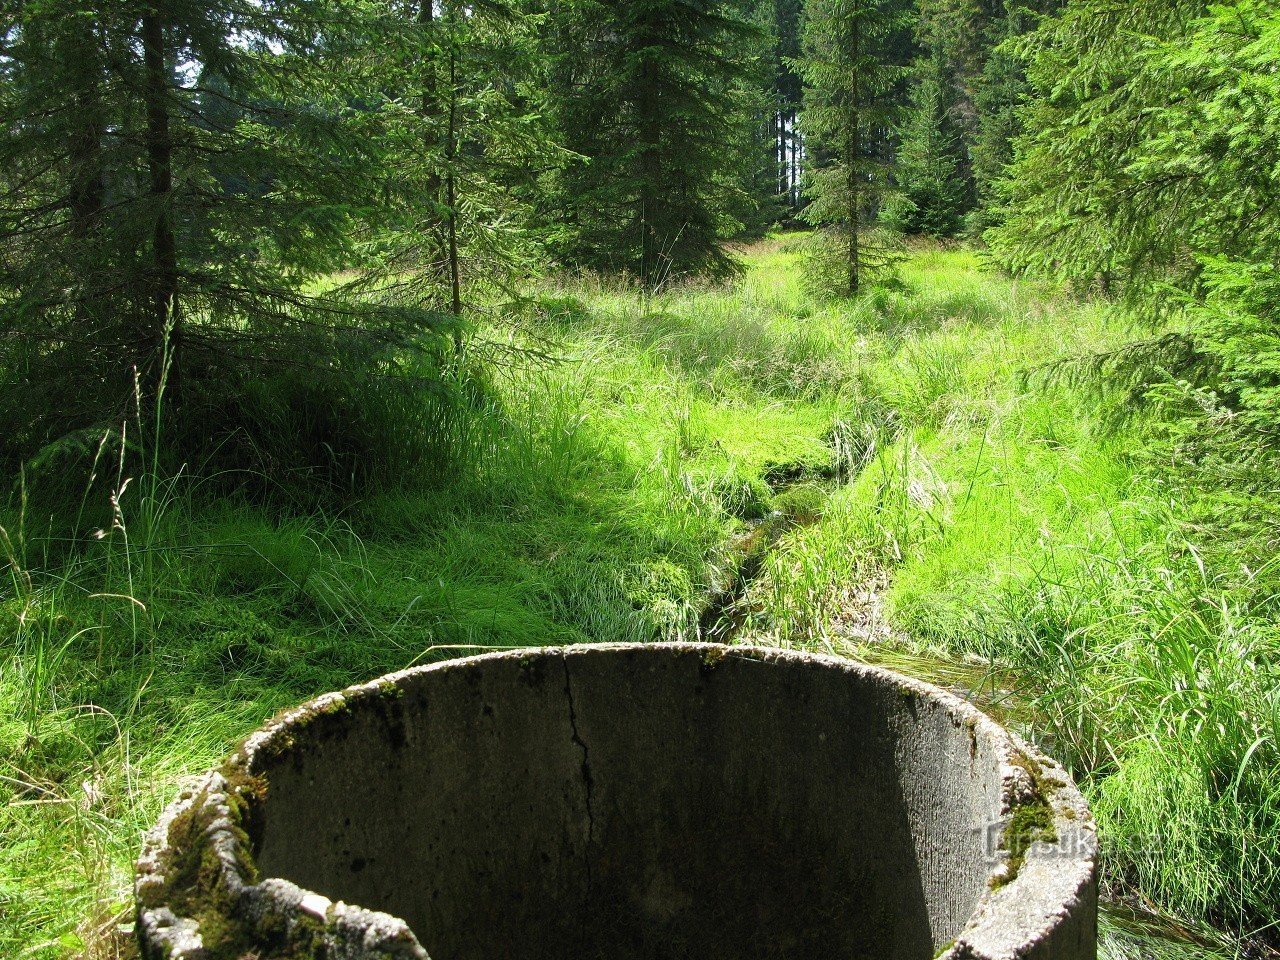 Nekdanji Rosenauerjev rezervoar z neuglednim betonskim obročem